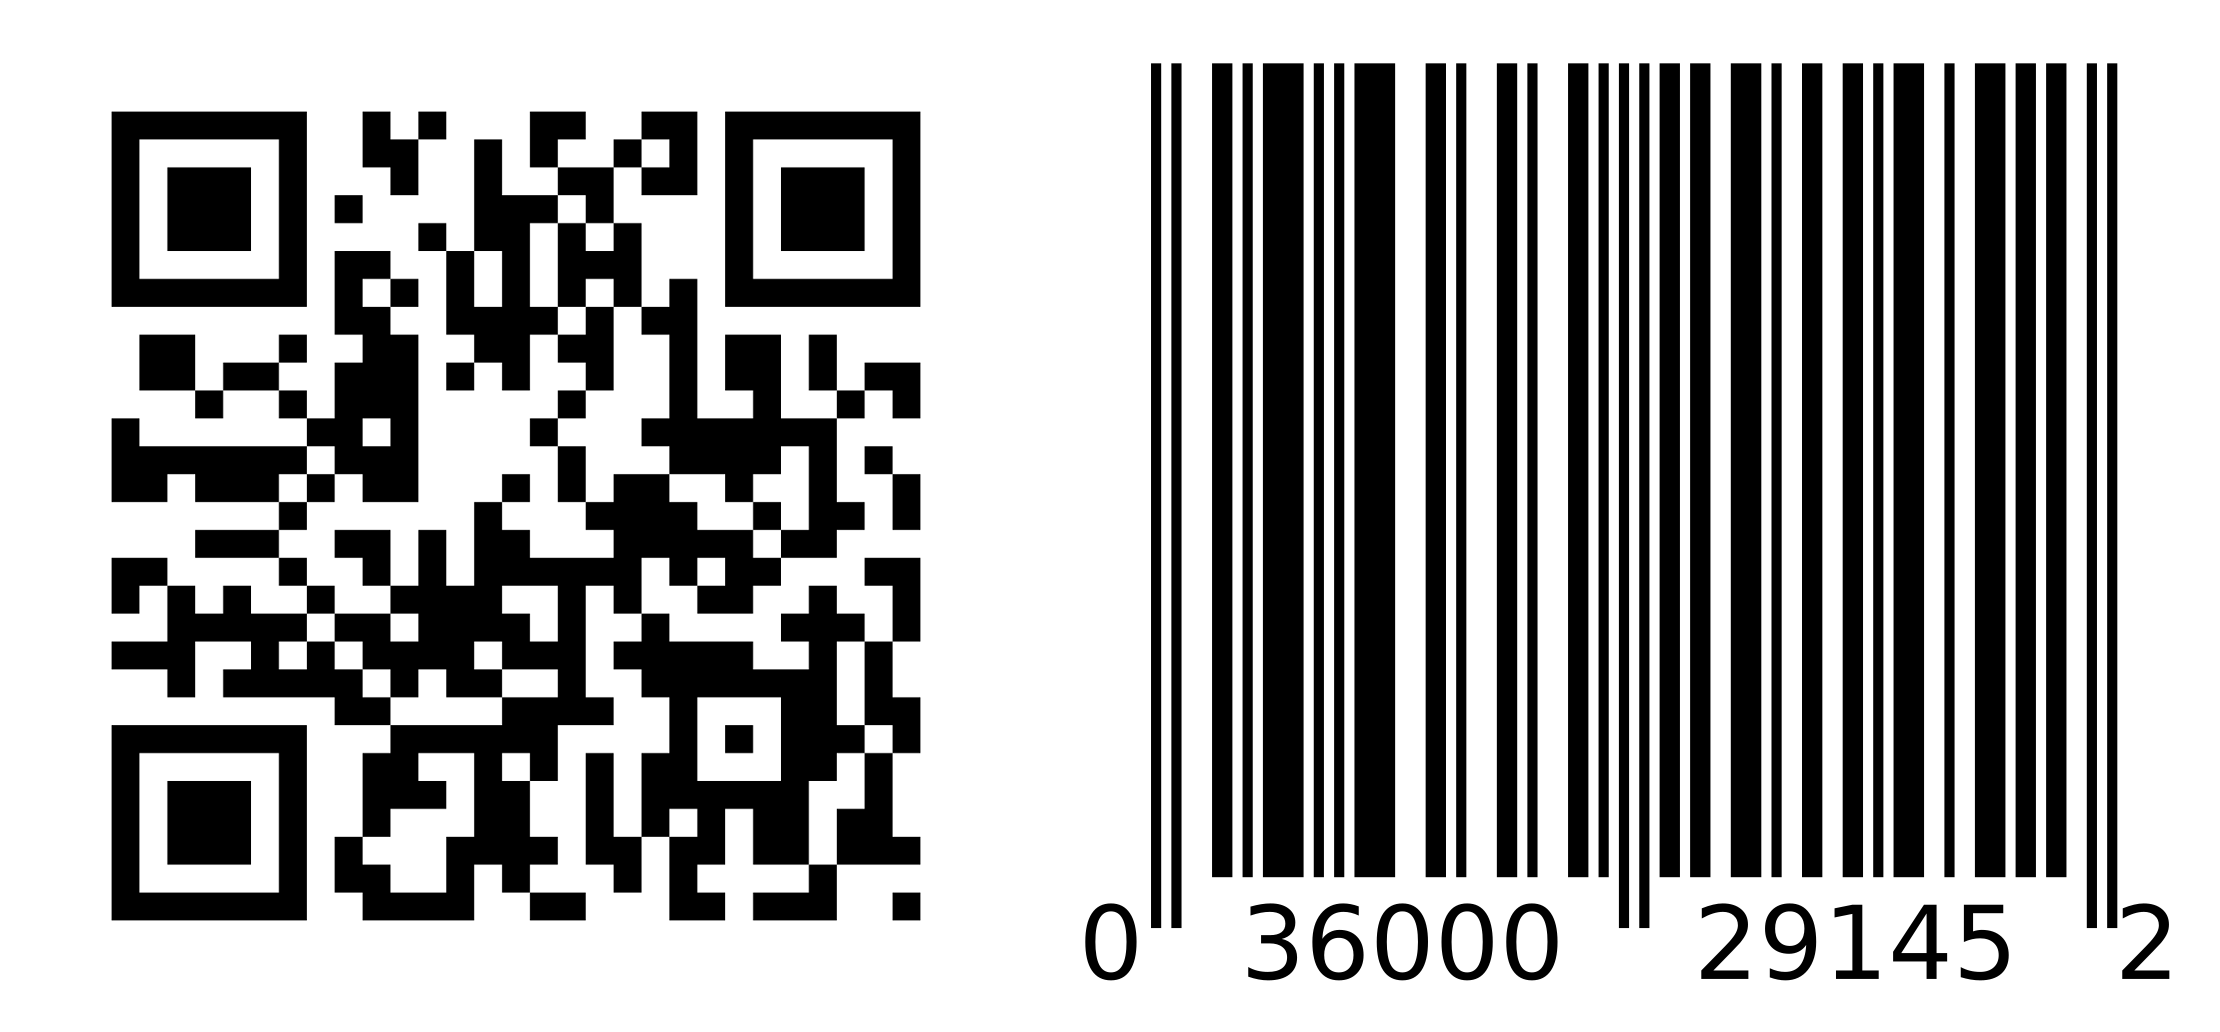 Qr code barcode